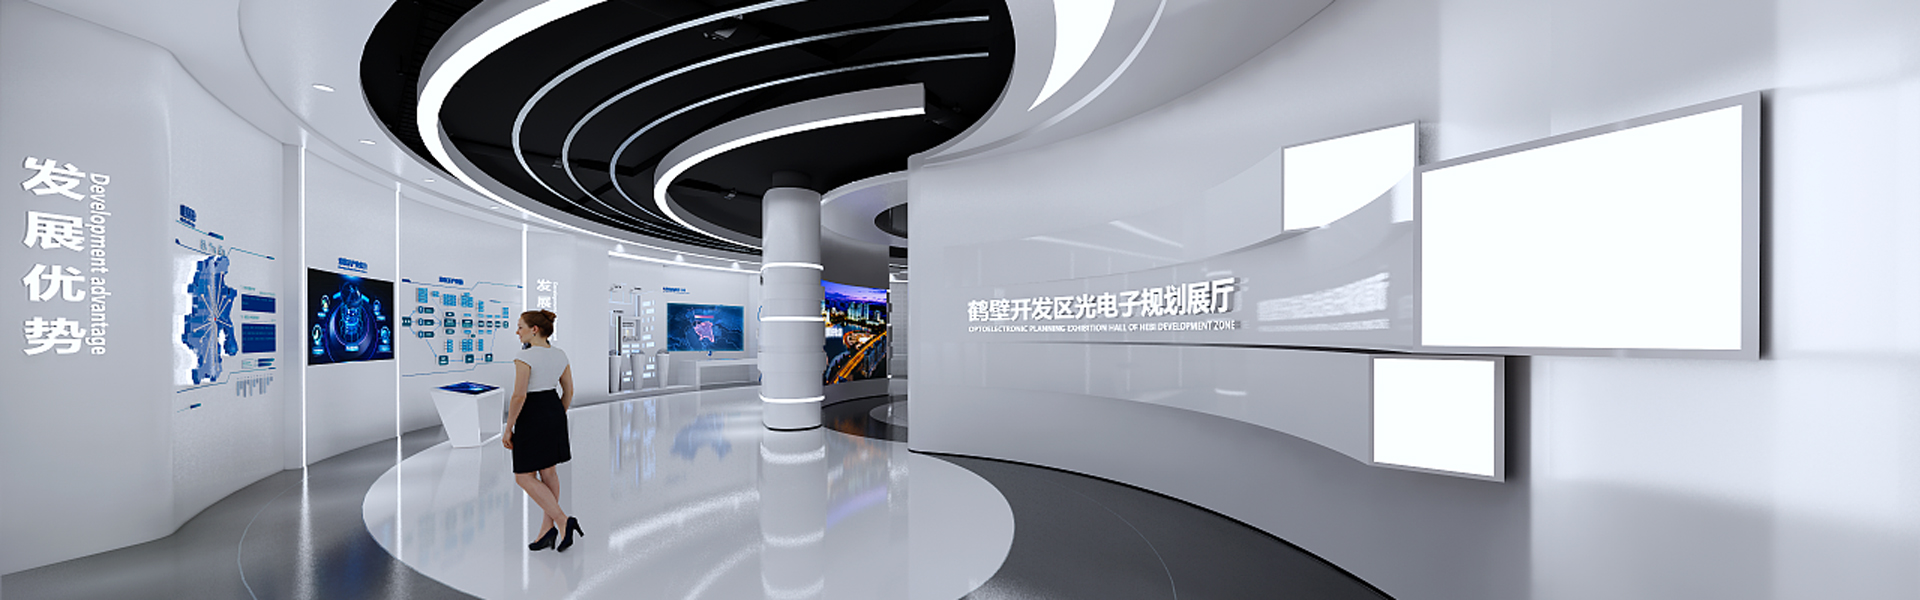 华南泵业企业展厅设计案例